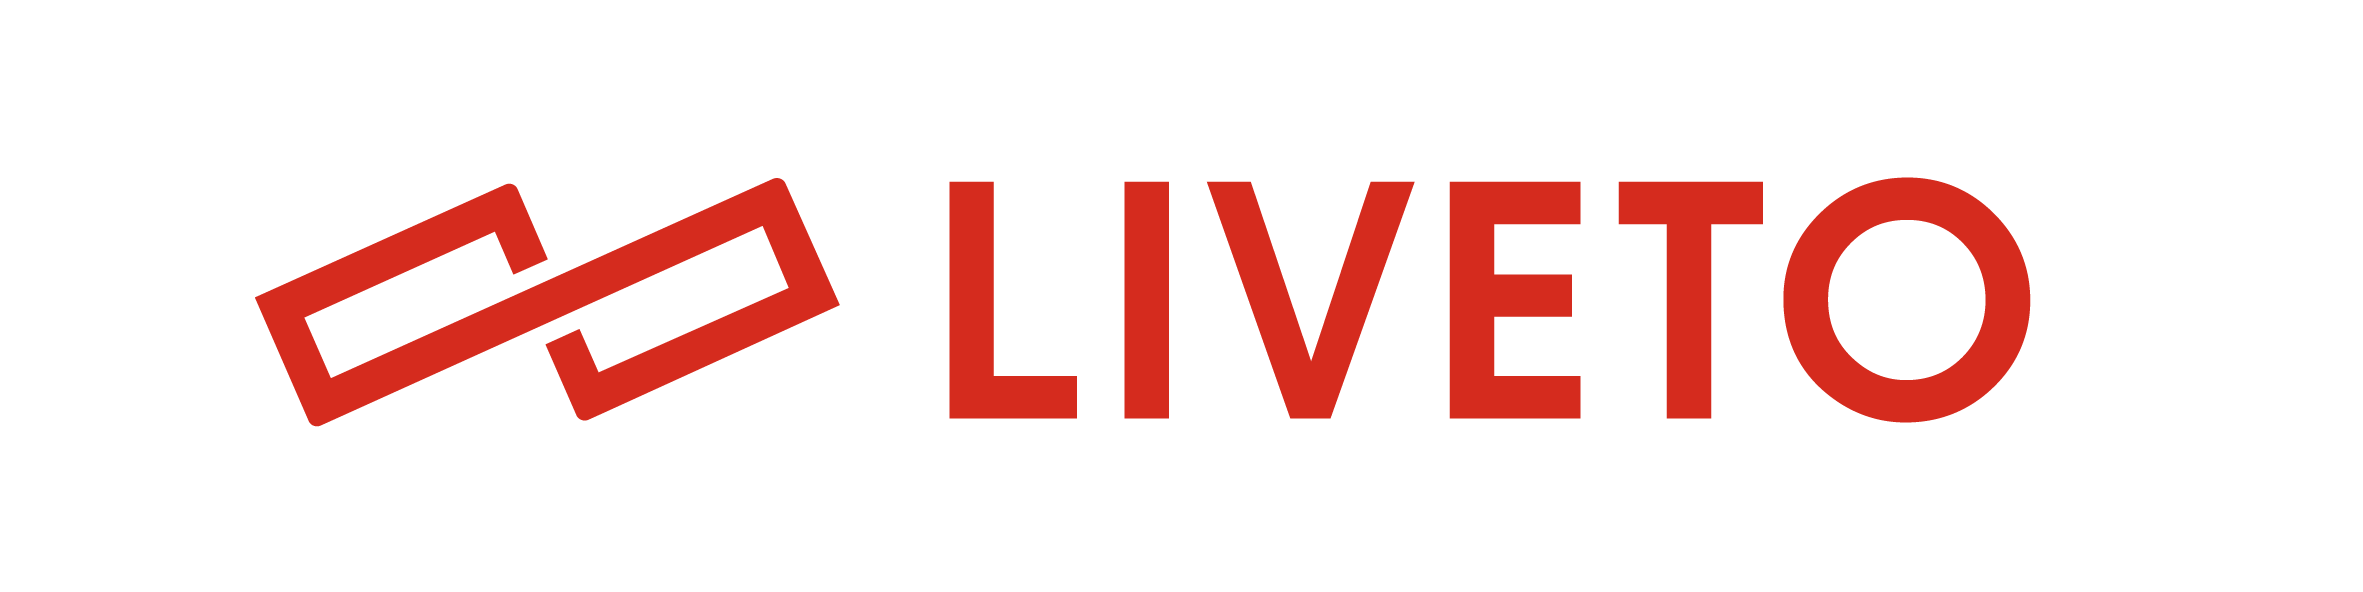 liveto-logo